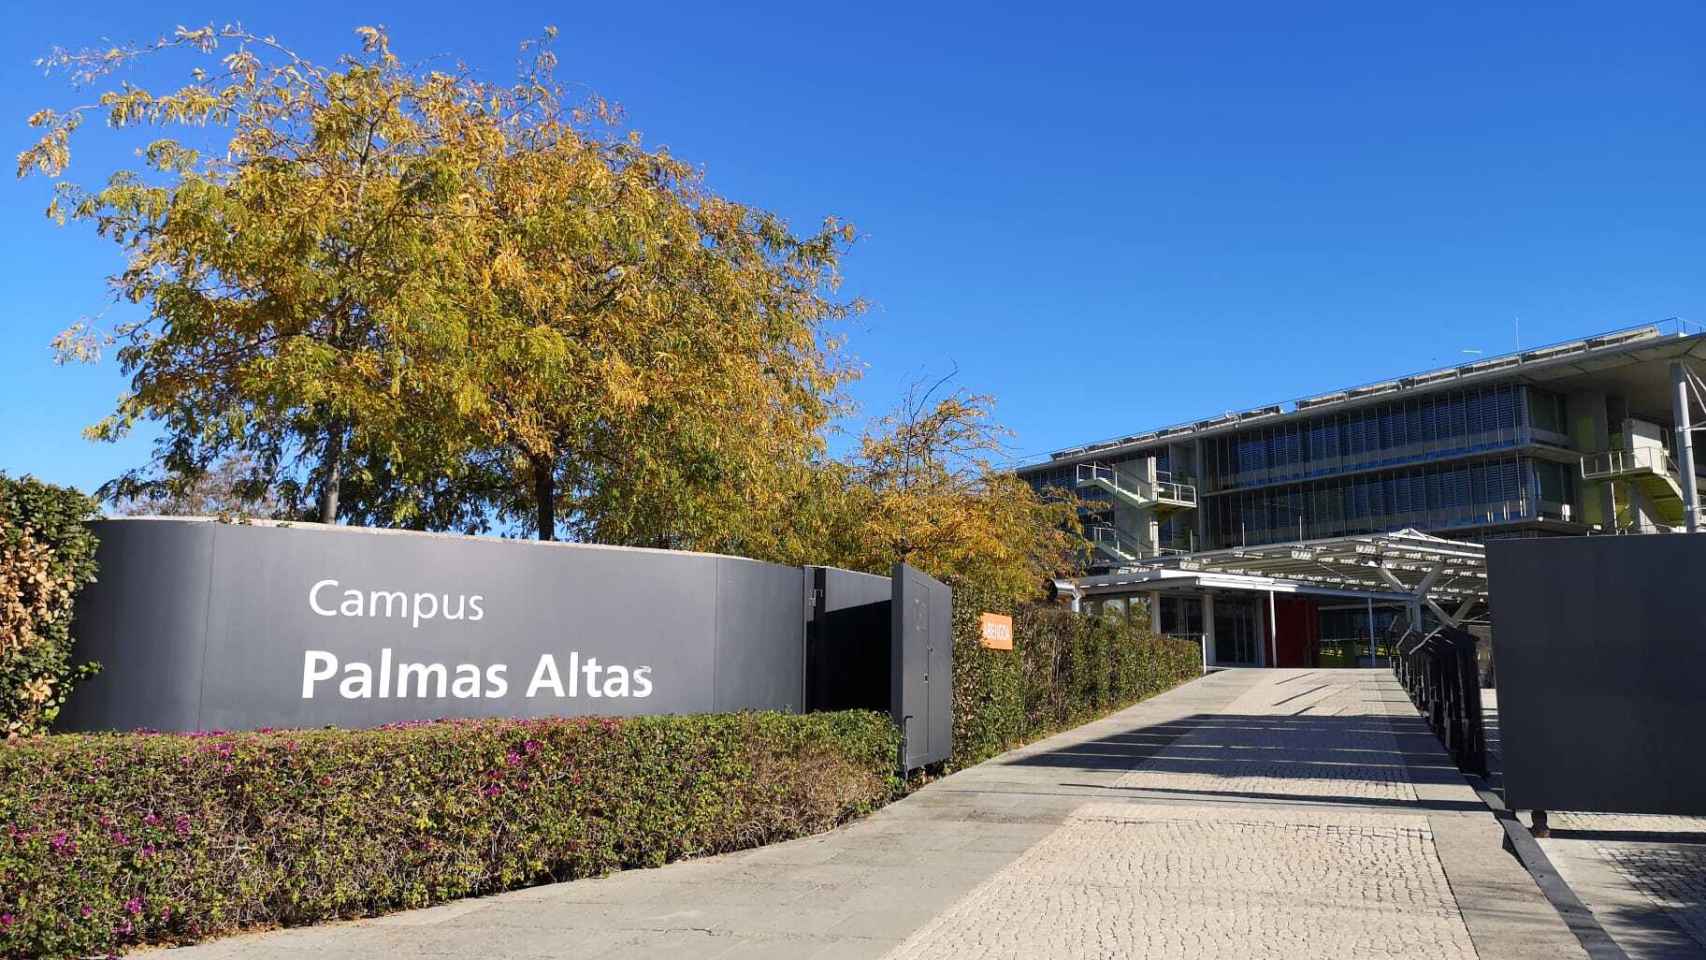 El campus de Palmas Altas, en Sevilla, donde se ubica la sede de la compañía.